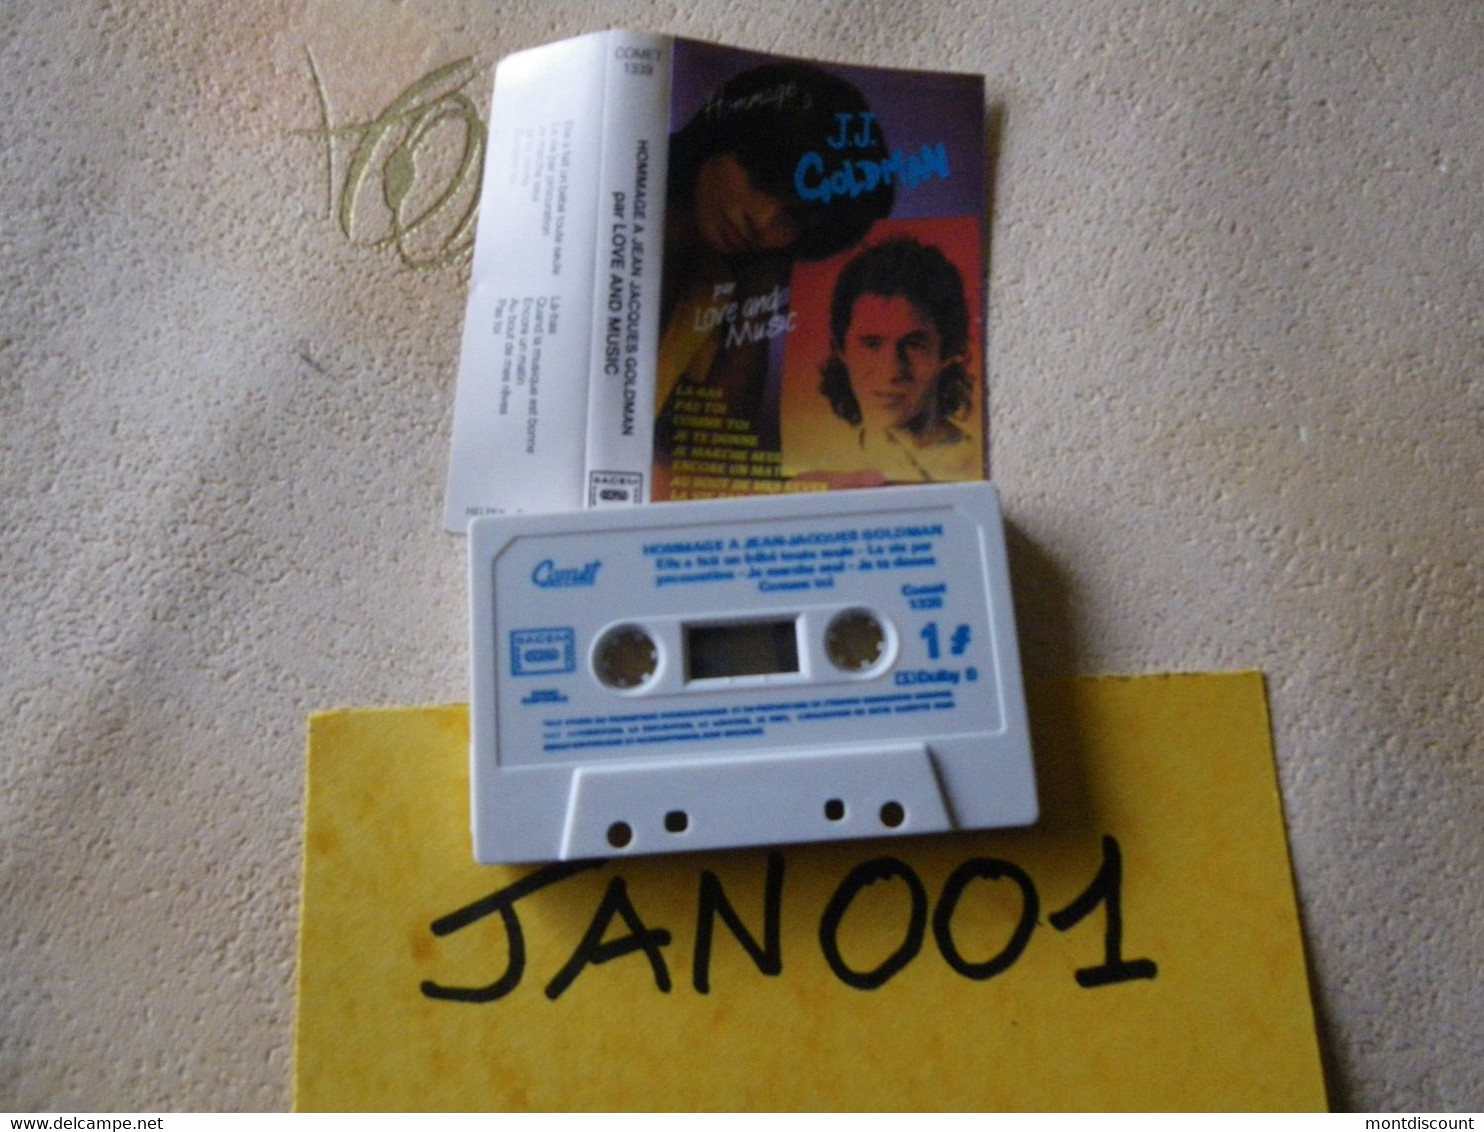 JEAN-JACQUES GOLDMAN RE-INTERPRETE K7 AUDIO... VOIR PHOTO...ET REGARDEZ LES AUTRES (PLUSIEURS) (JAN 001) - Cassettes Audio